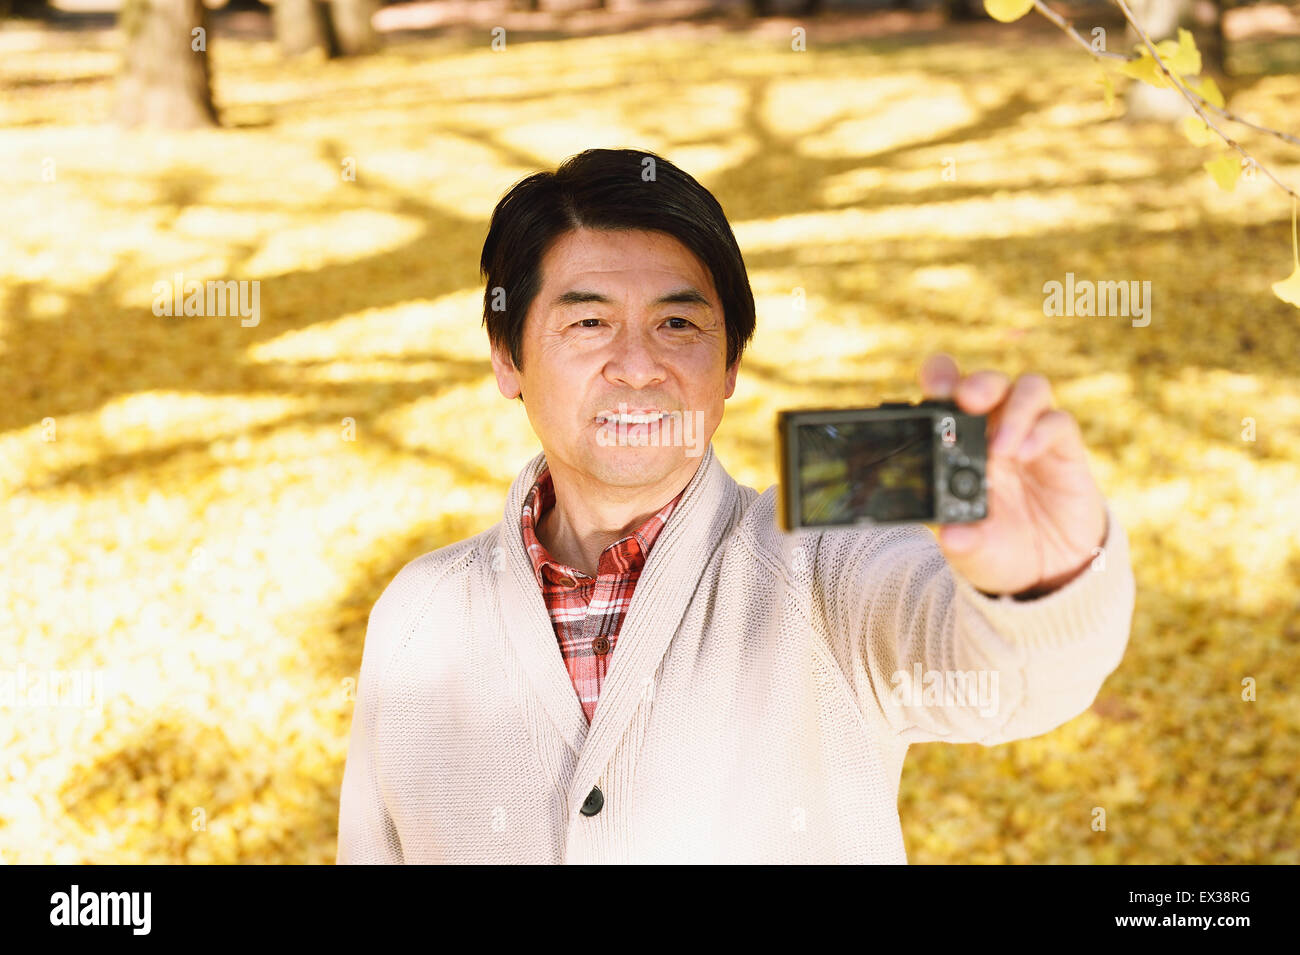 Senior hombre teniendo un selfie japonés en un parque de la ciudad en otoño Foto de stock